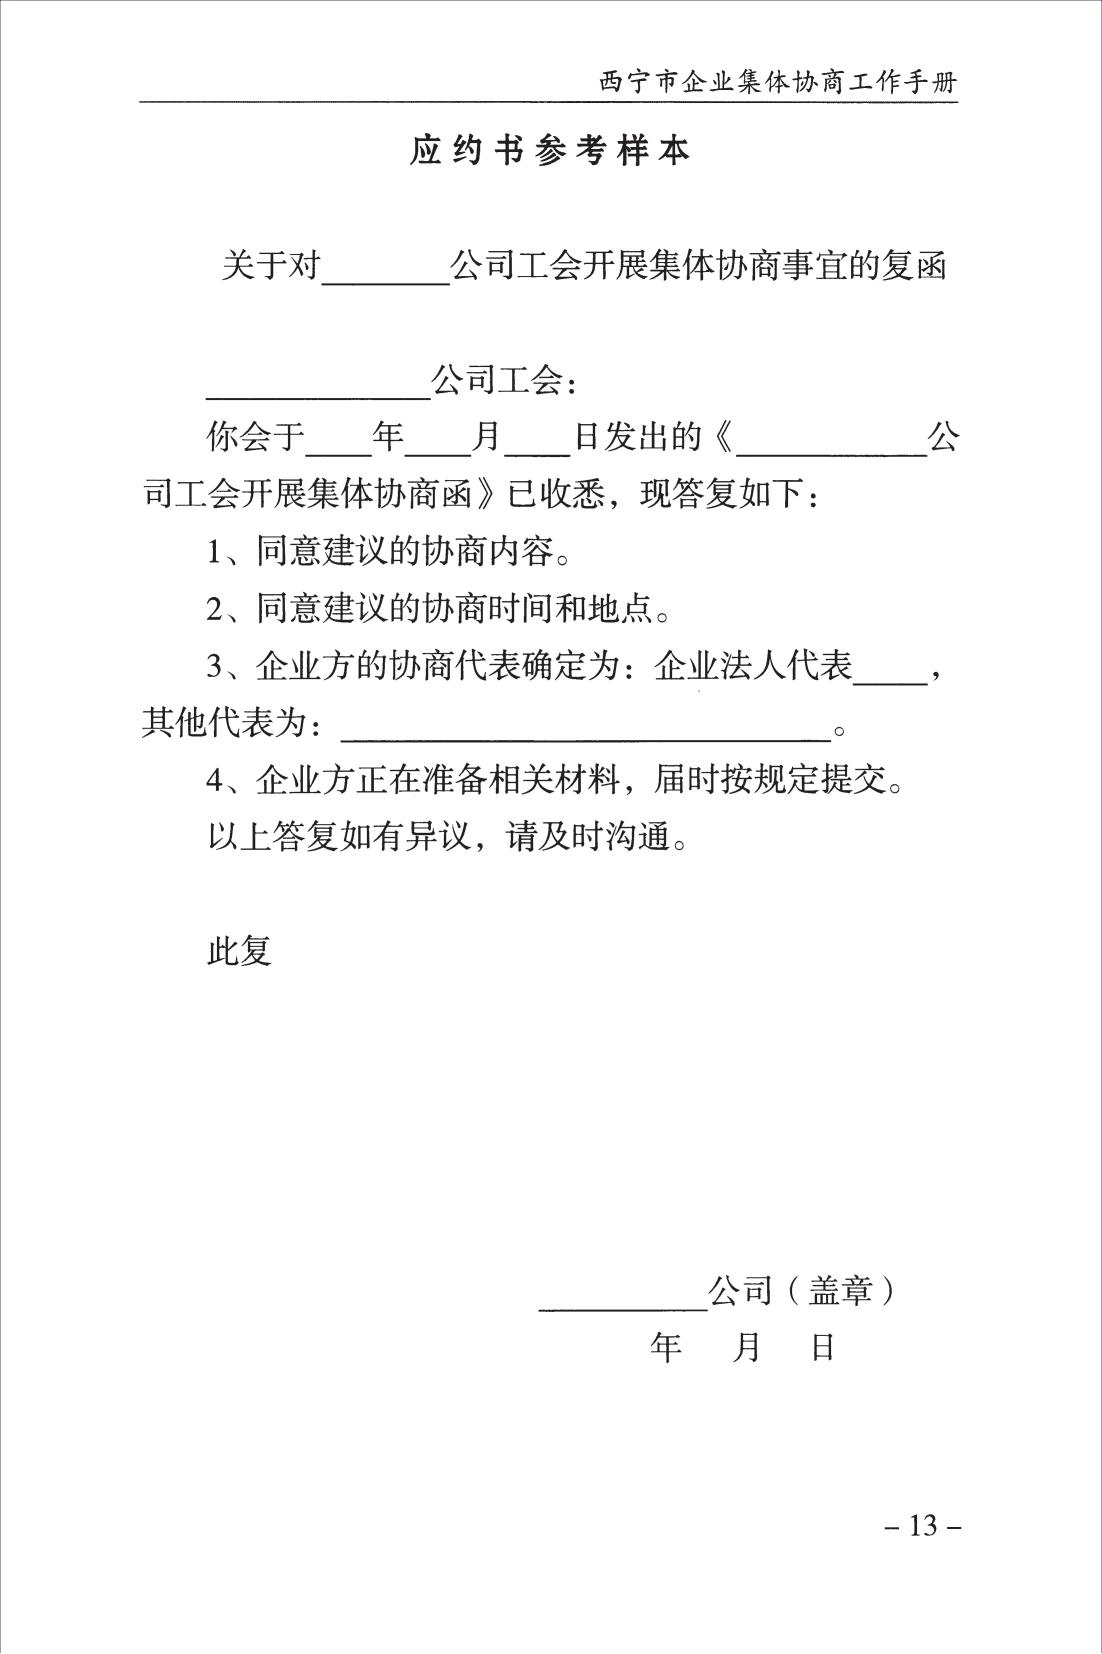 西宁市企业集体协商工作手册_15.jpg